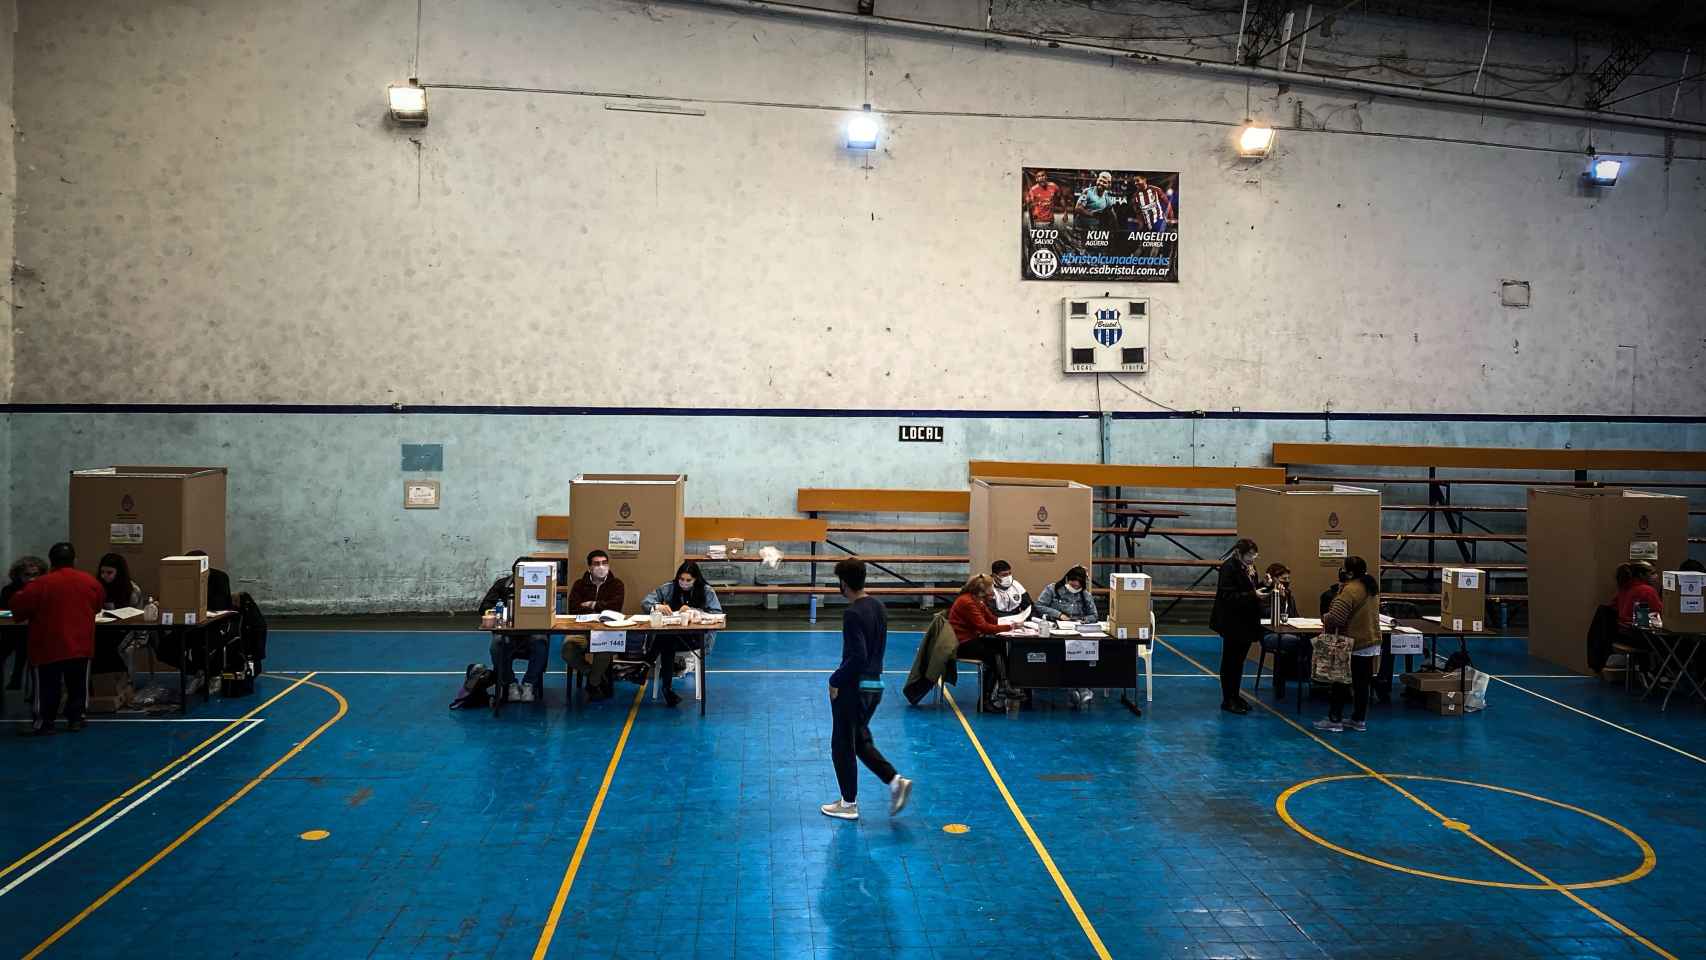 Vista general de un centro de votación en Buenos Aires, Argentina.